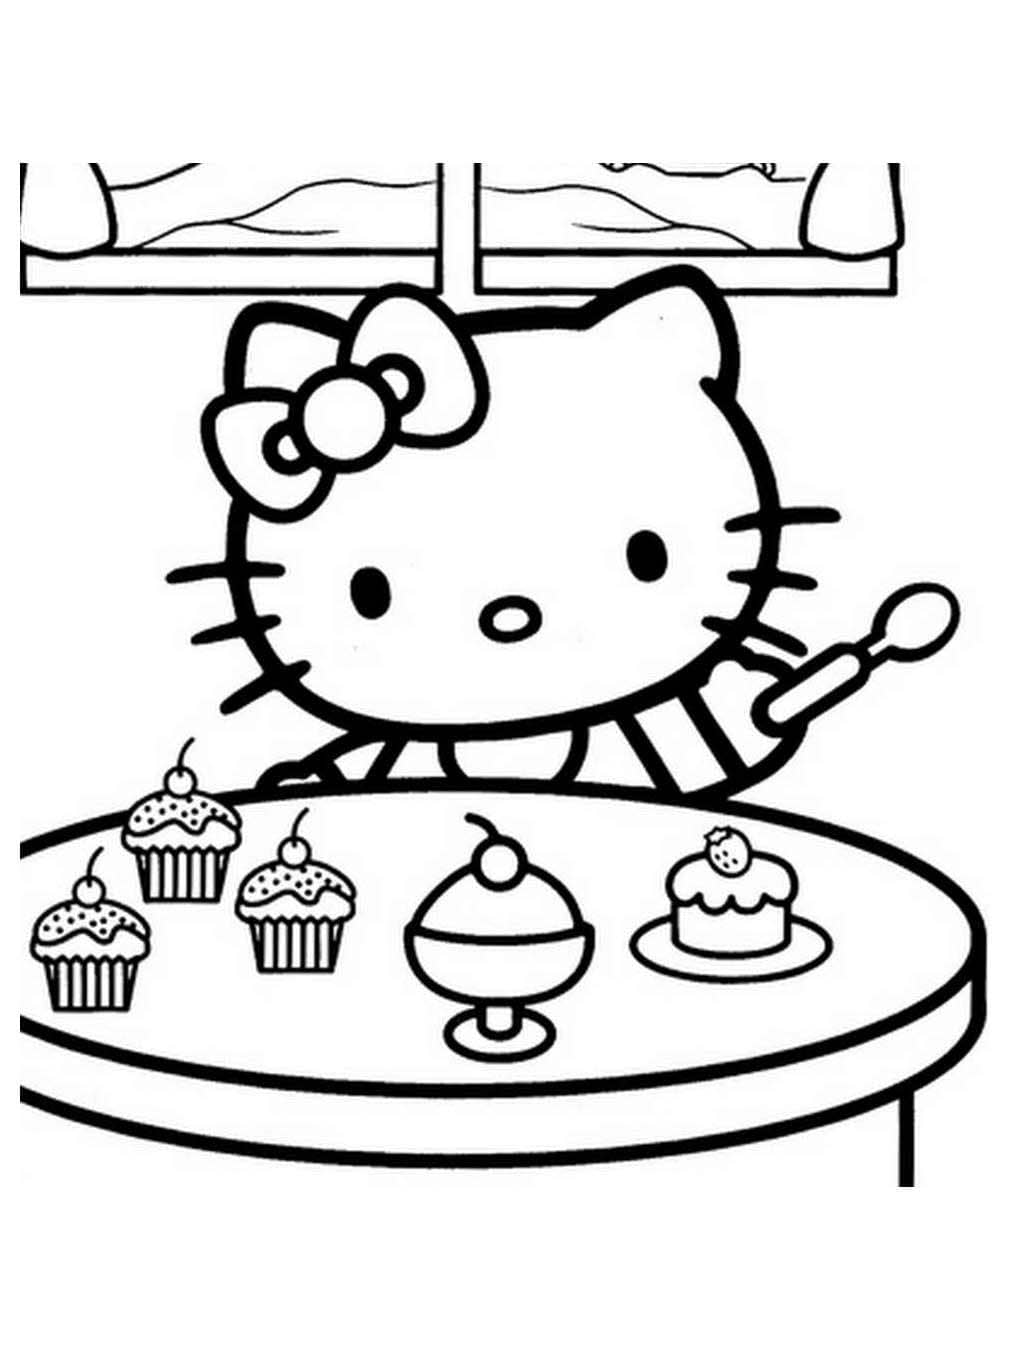 키티는 컵케이크를 먹고 있다